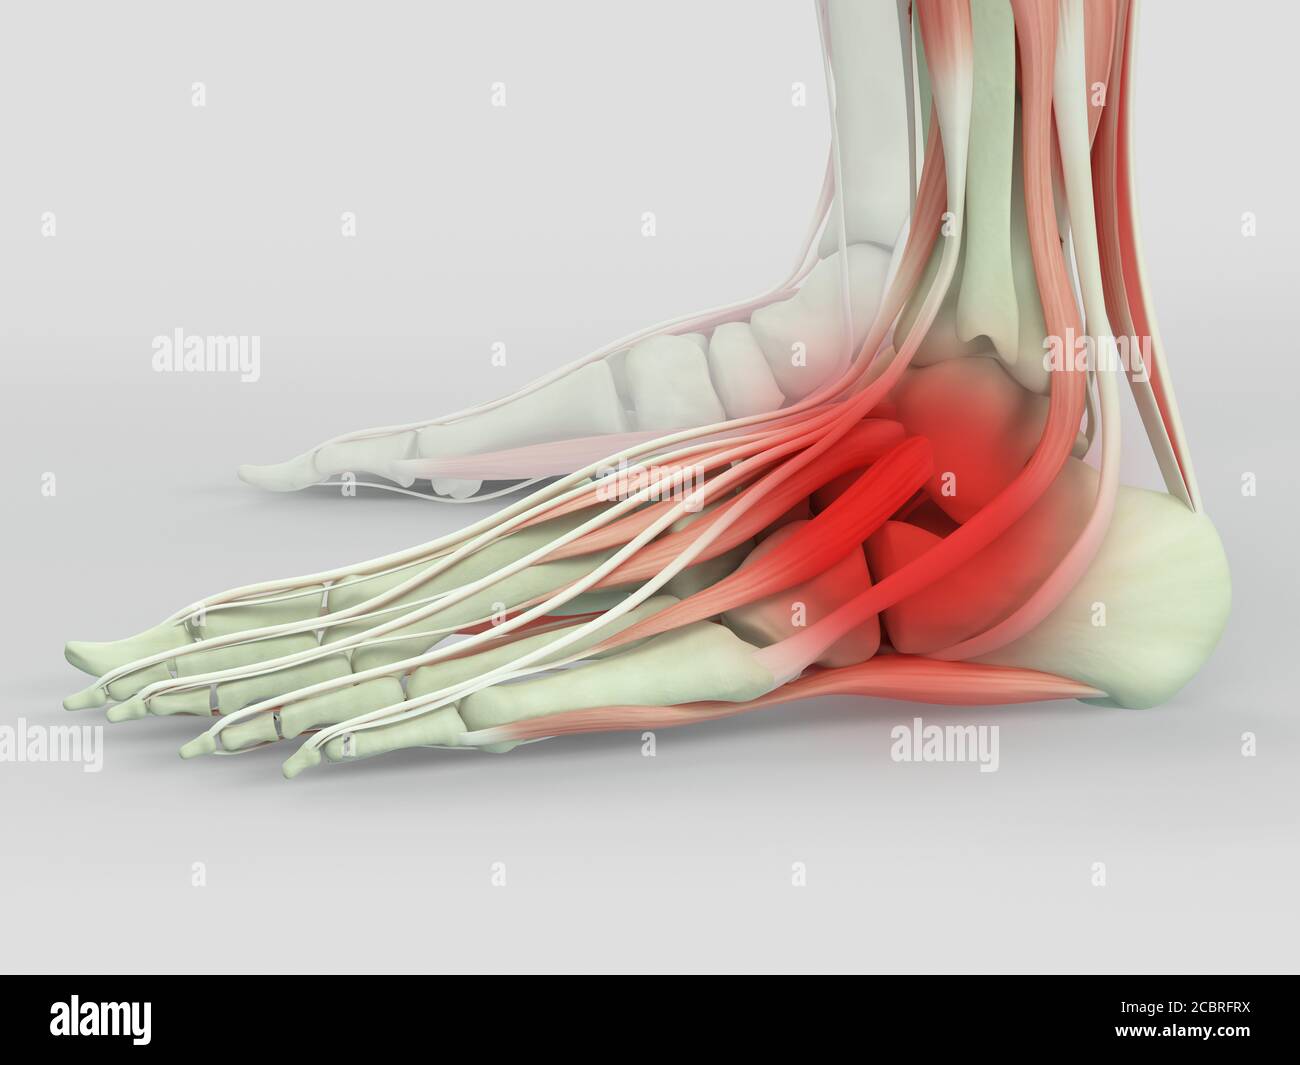 Anatomy illustration of human foot  3D Illustration. Stock Photo